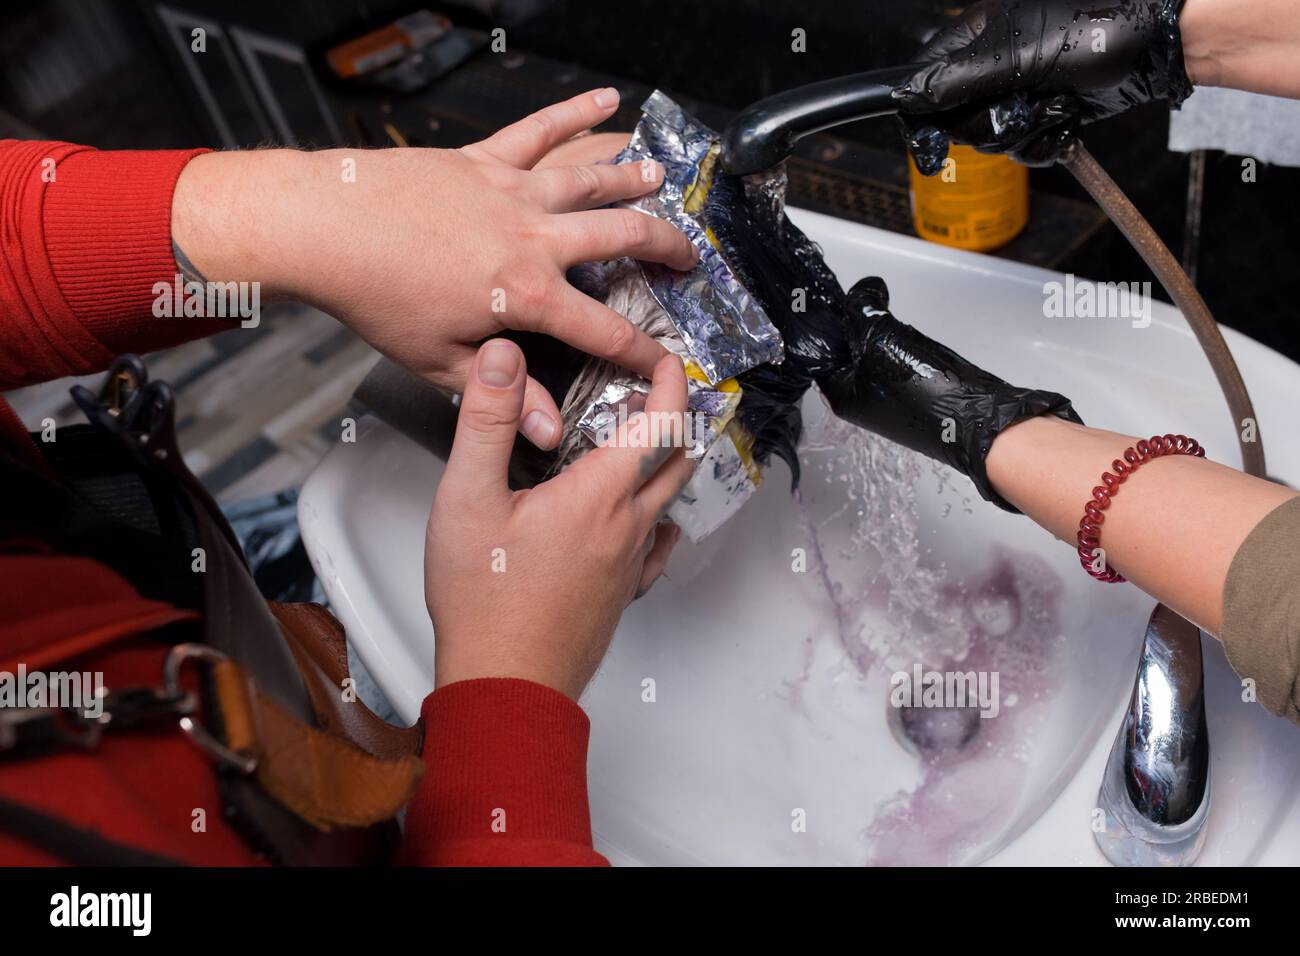 Die Hände eines Friseurs und eines Friseurs, die in einem Team arbeiten und sich mit Regen über dem Waschbecken waschen, nachdem sie einem Kunden, einem Mann im Salon, gefärbt haben. Stockfoto